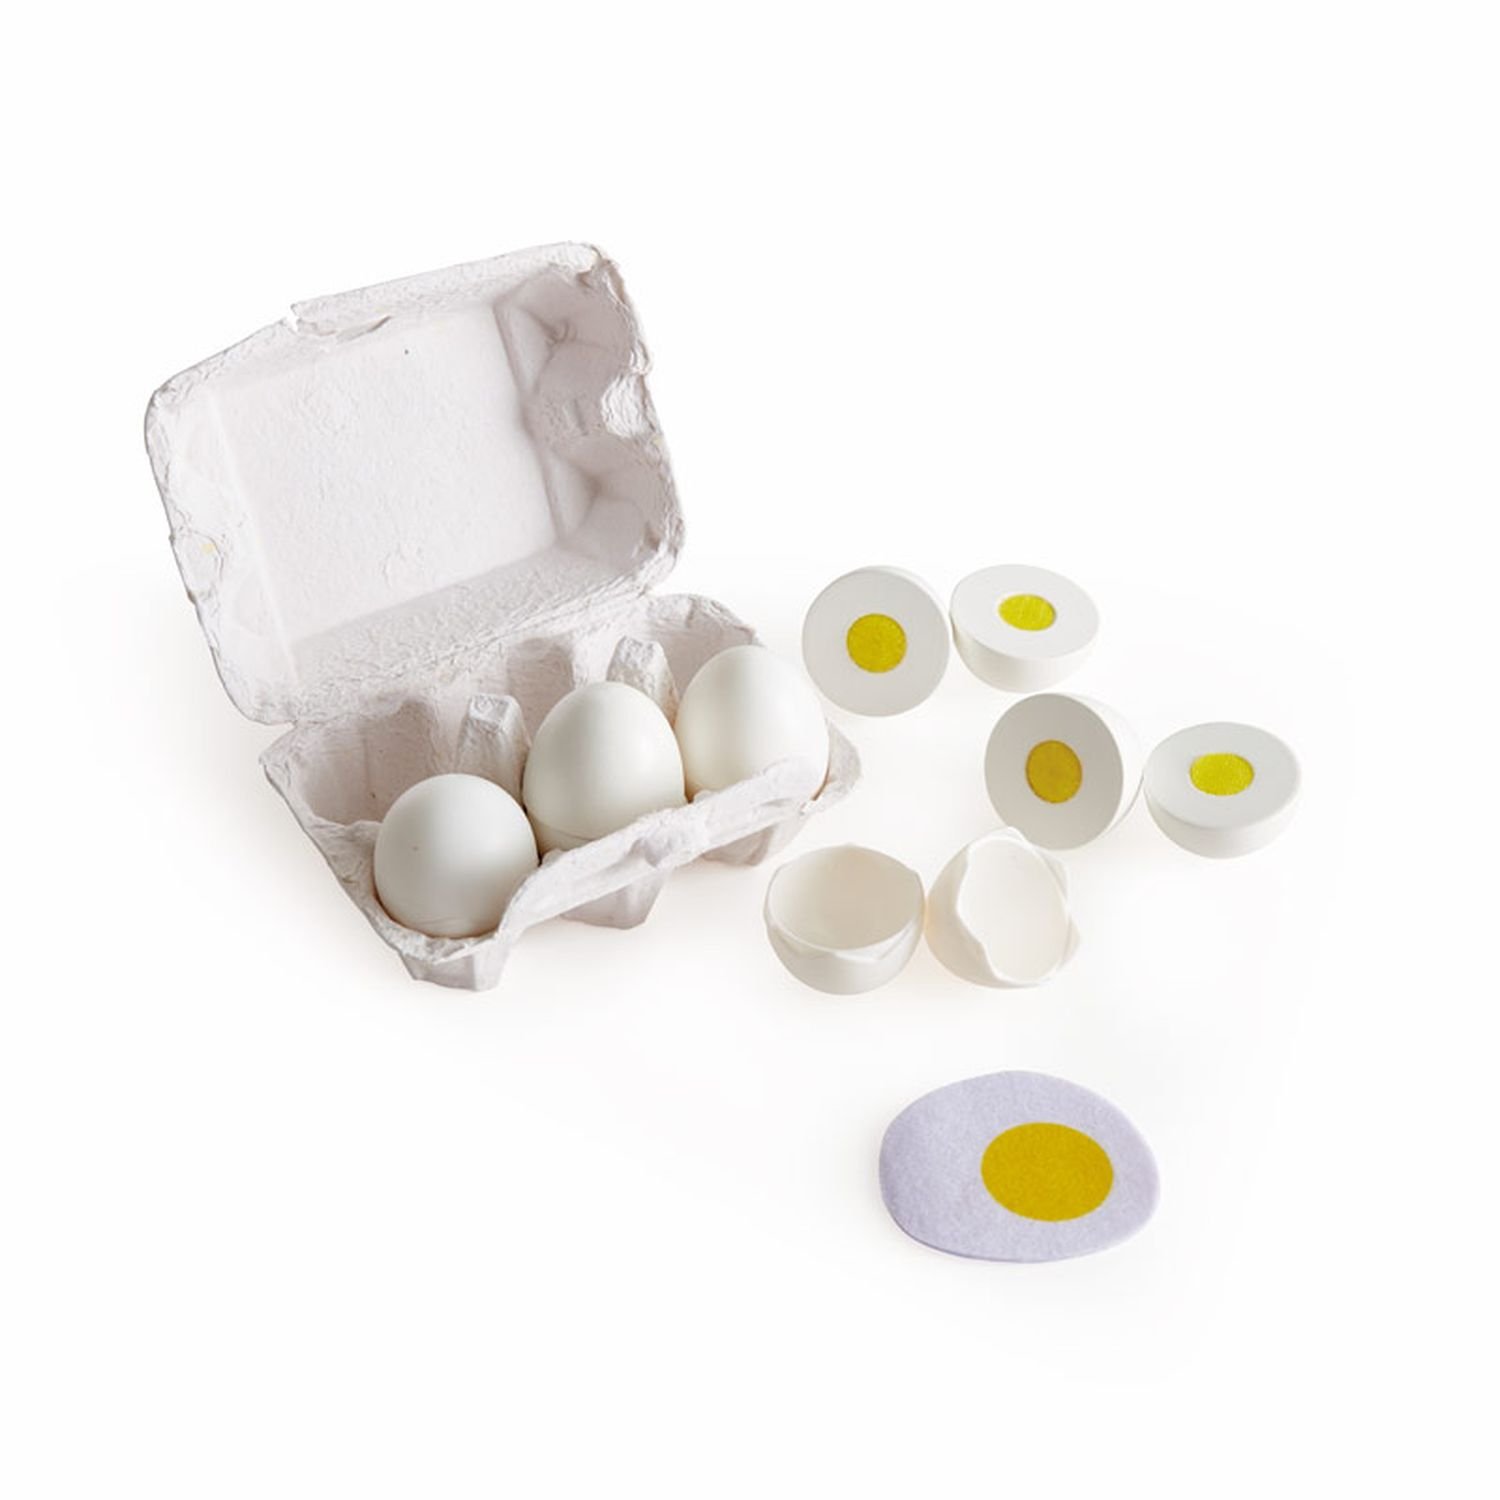 Игровой набор продуктов Hape "Яйца" - фото №1